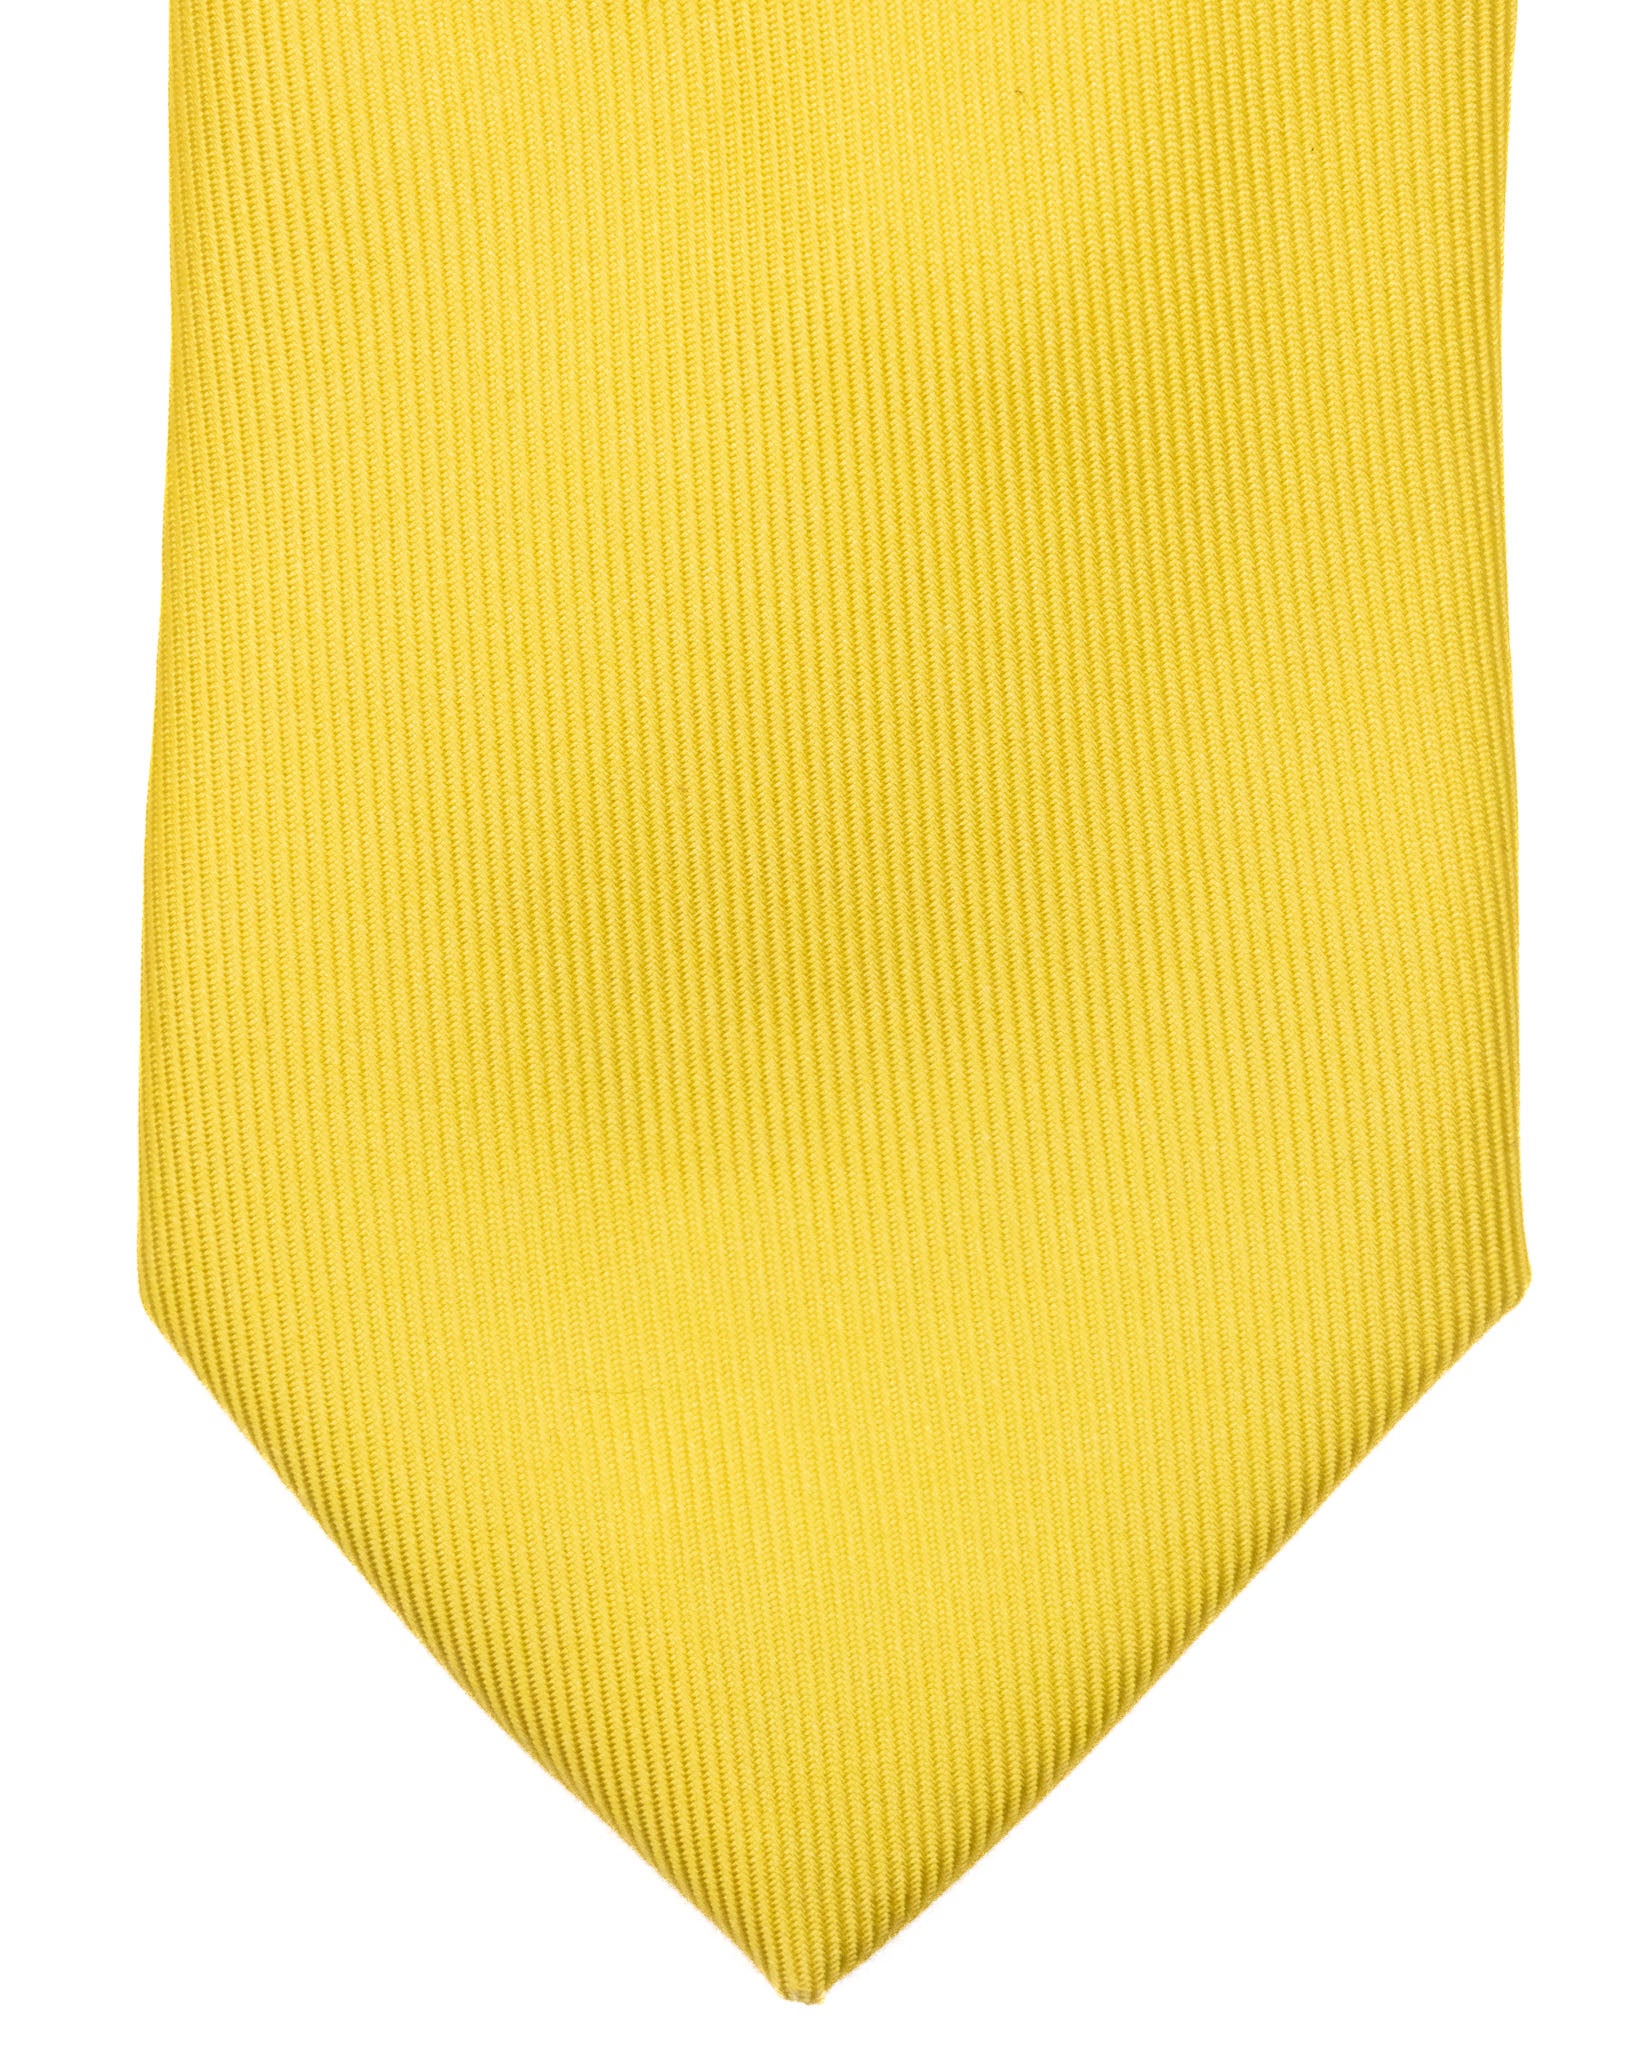 Cravatta - in seta twill gialla